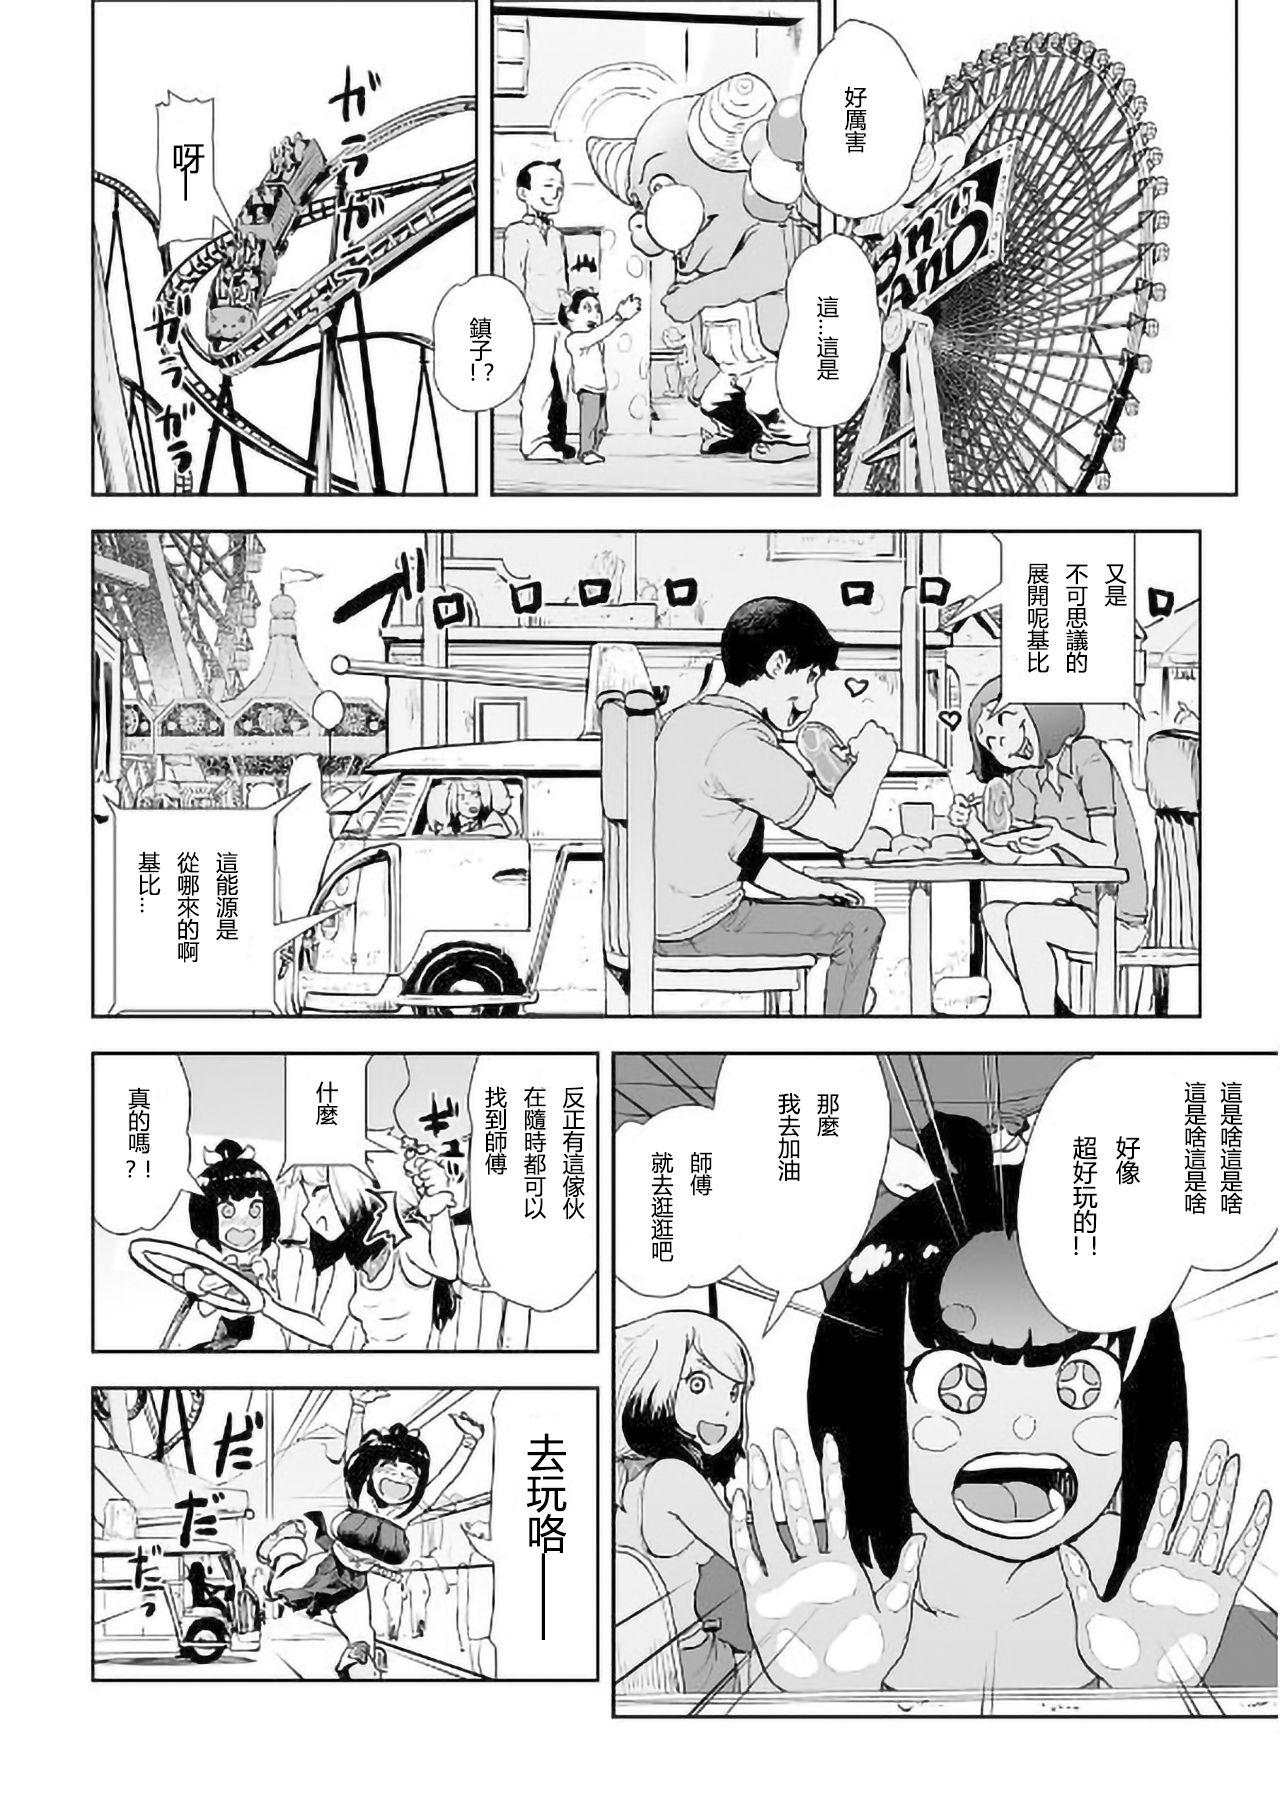 Fishnet MOMO! Daiyonwa Youkoso Oniland no Maki Exibicionismo - Page 7